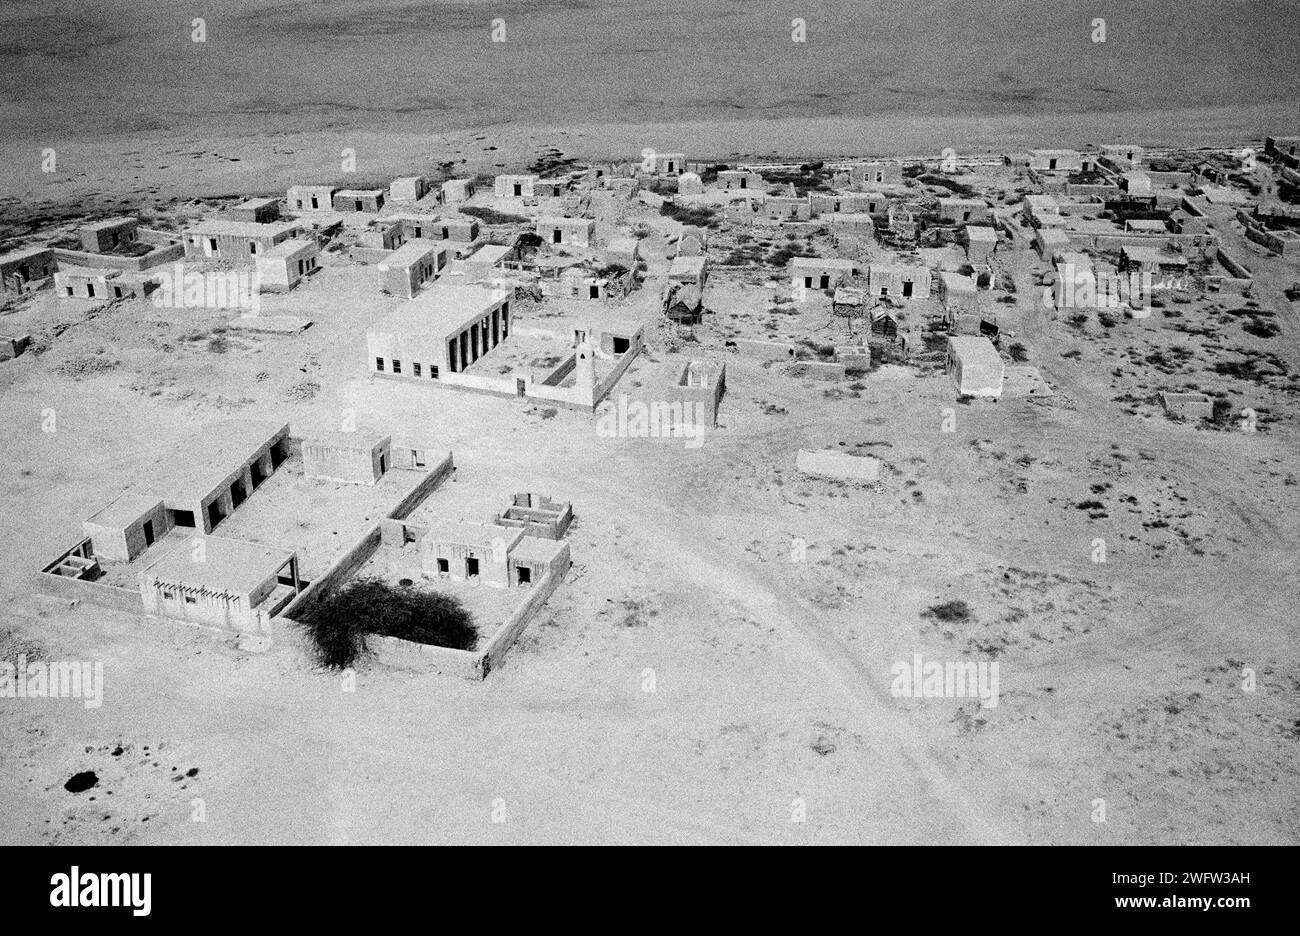 Dubai-Vereinigte Arabische Emirate-Antenne von einem Dorf In der Wüste In den 1970er Jahren Stockfoto